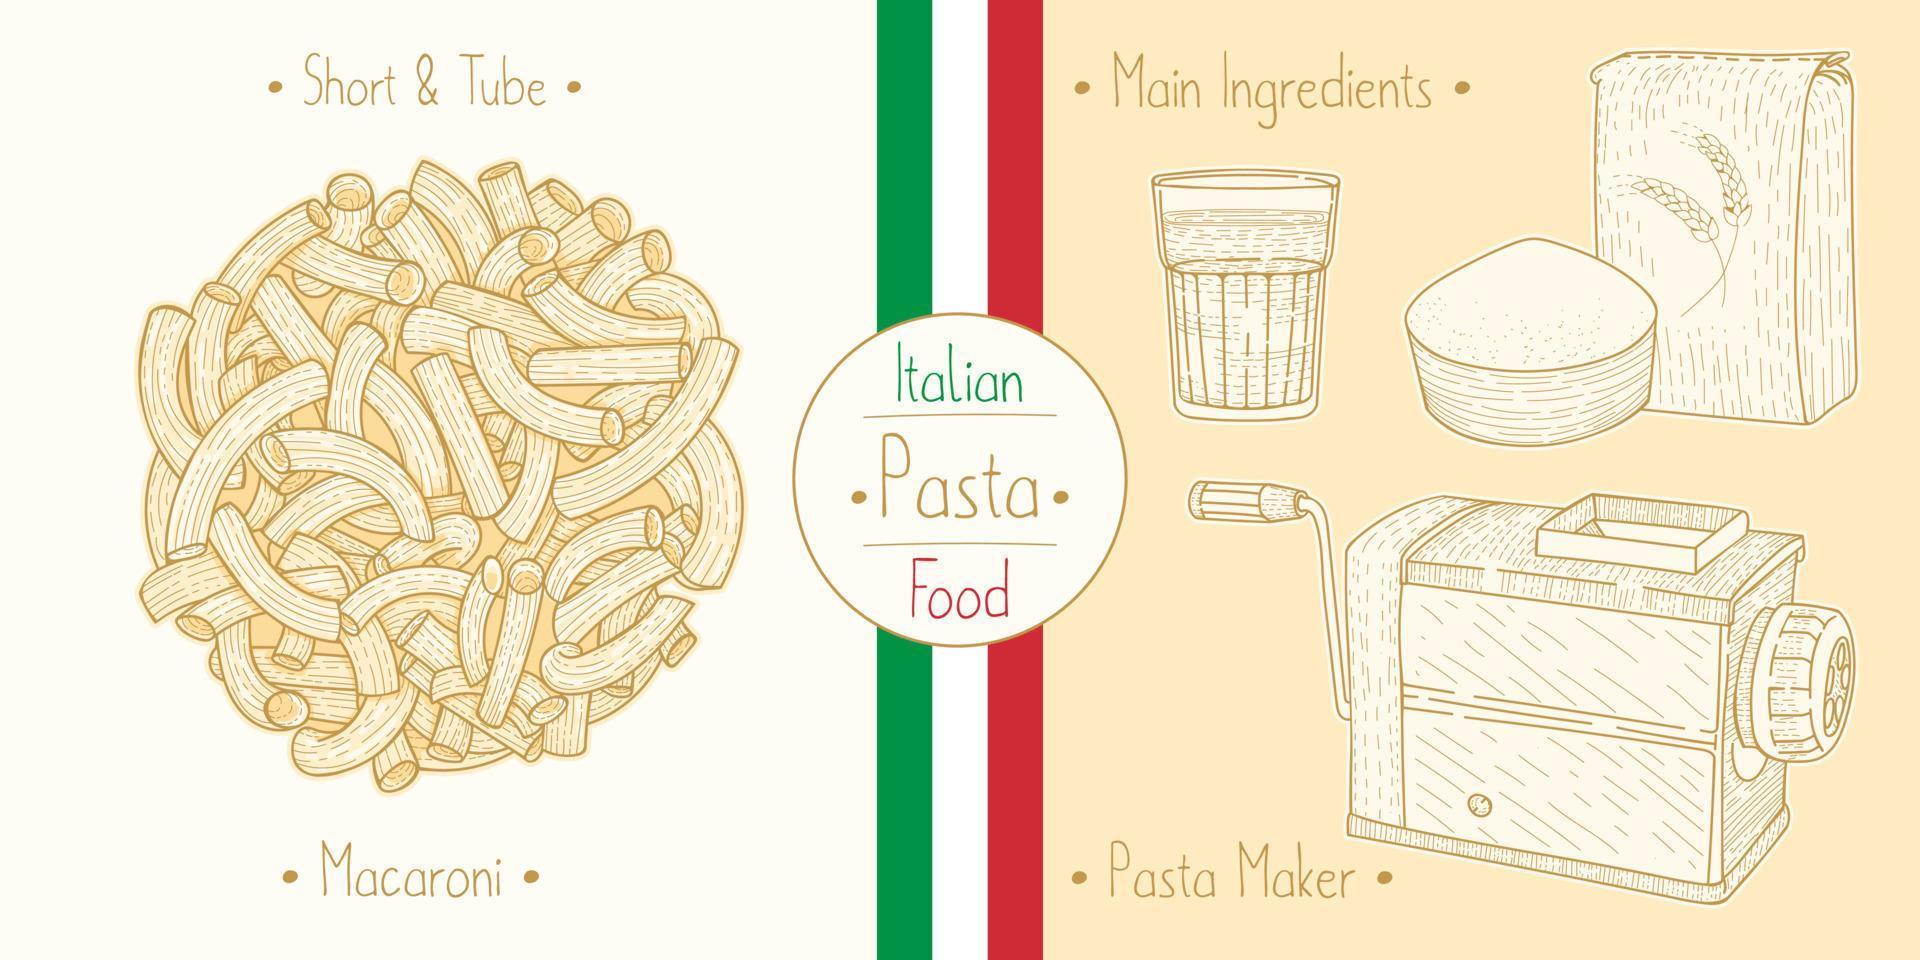 cuisine italienne pâtes en forme de coude alias macaroni et ingrédients principaux et équipement de fabricants de pâtes, esquisse d'illustration dans un style vintage vecteur